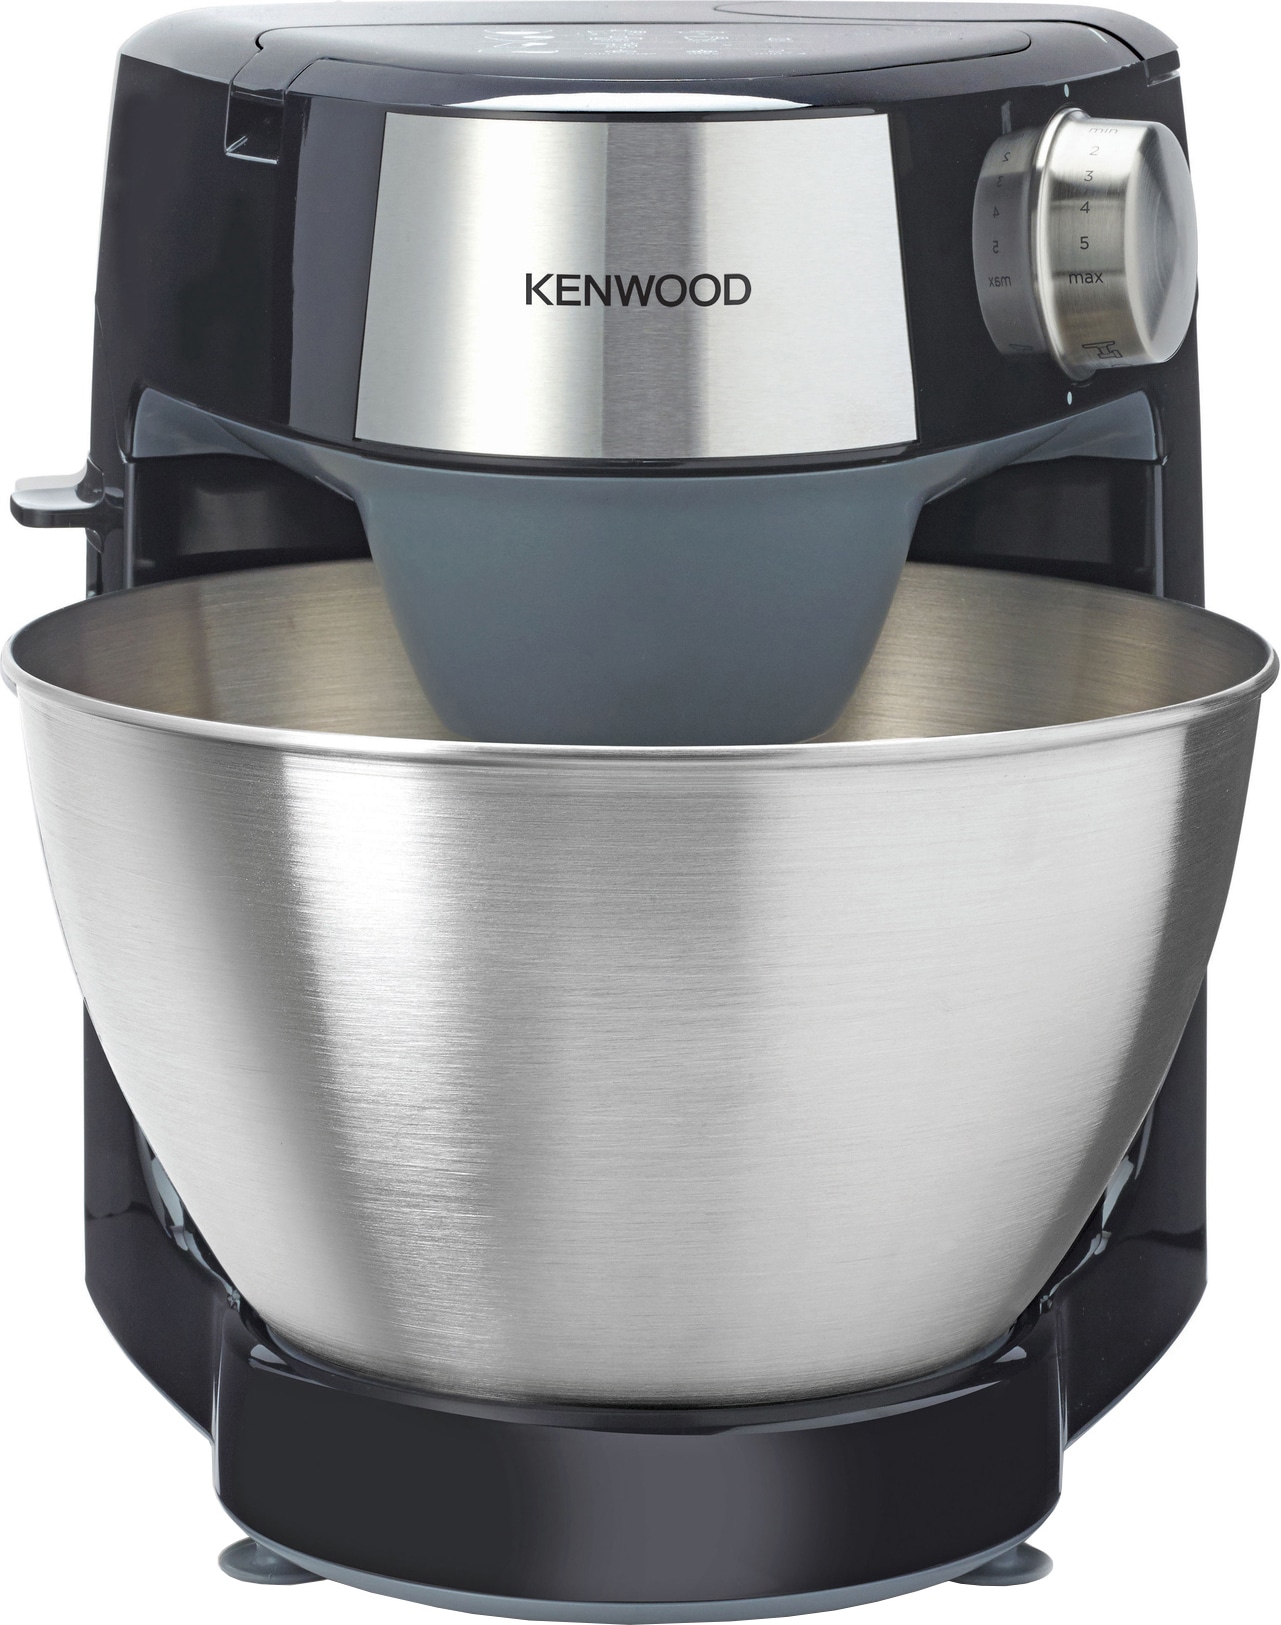 Kenwood Prospero+ kjøkkenmaskin KHC29.HOBK (sort) - Kjøkkenmaskin Elkjøp